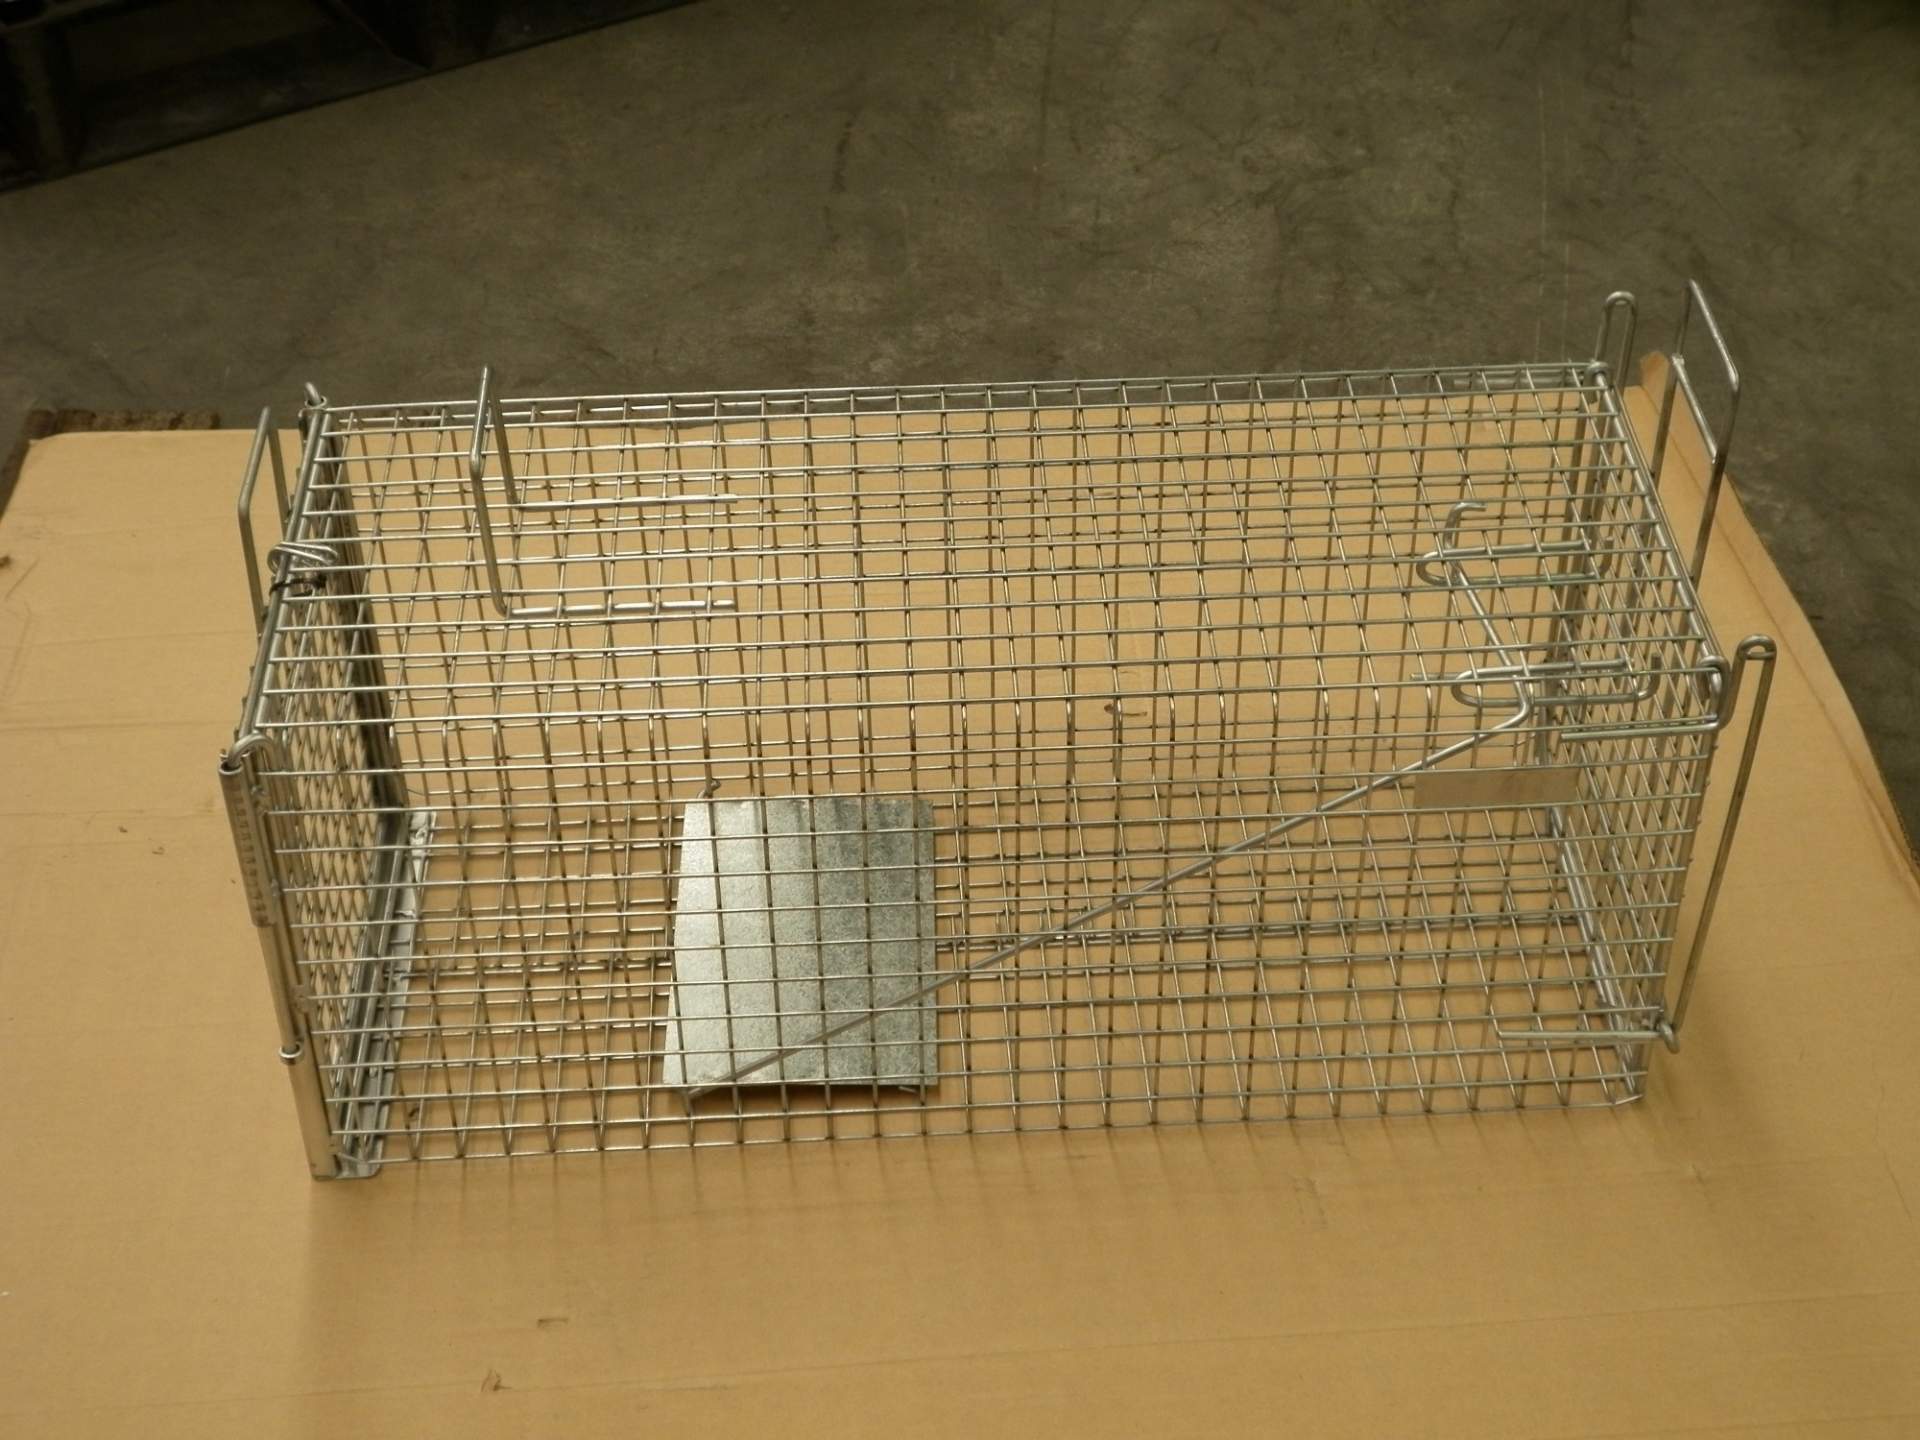 Cat & Possum Cage Trap - NoPests